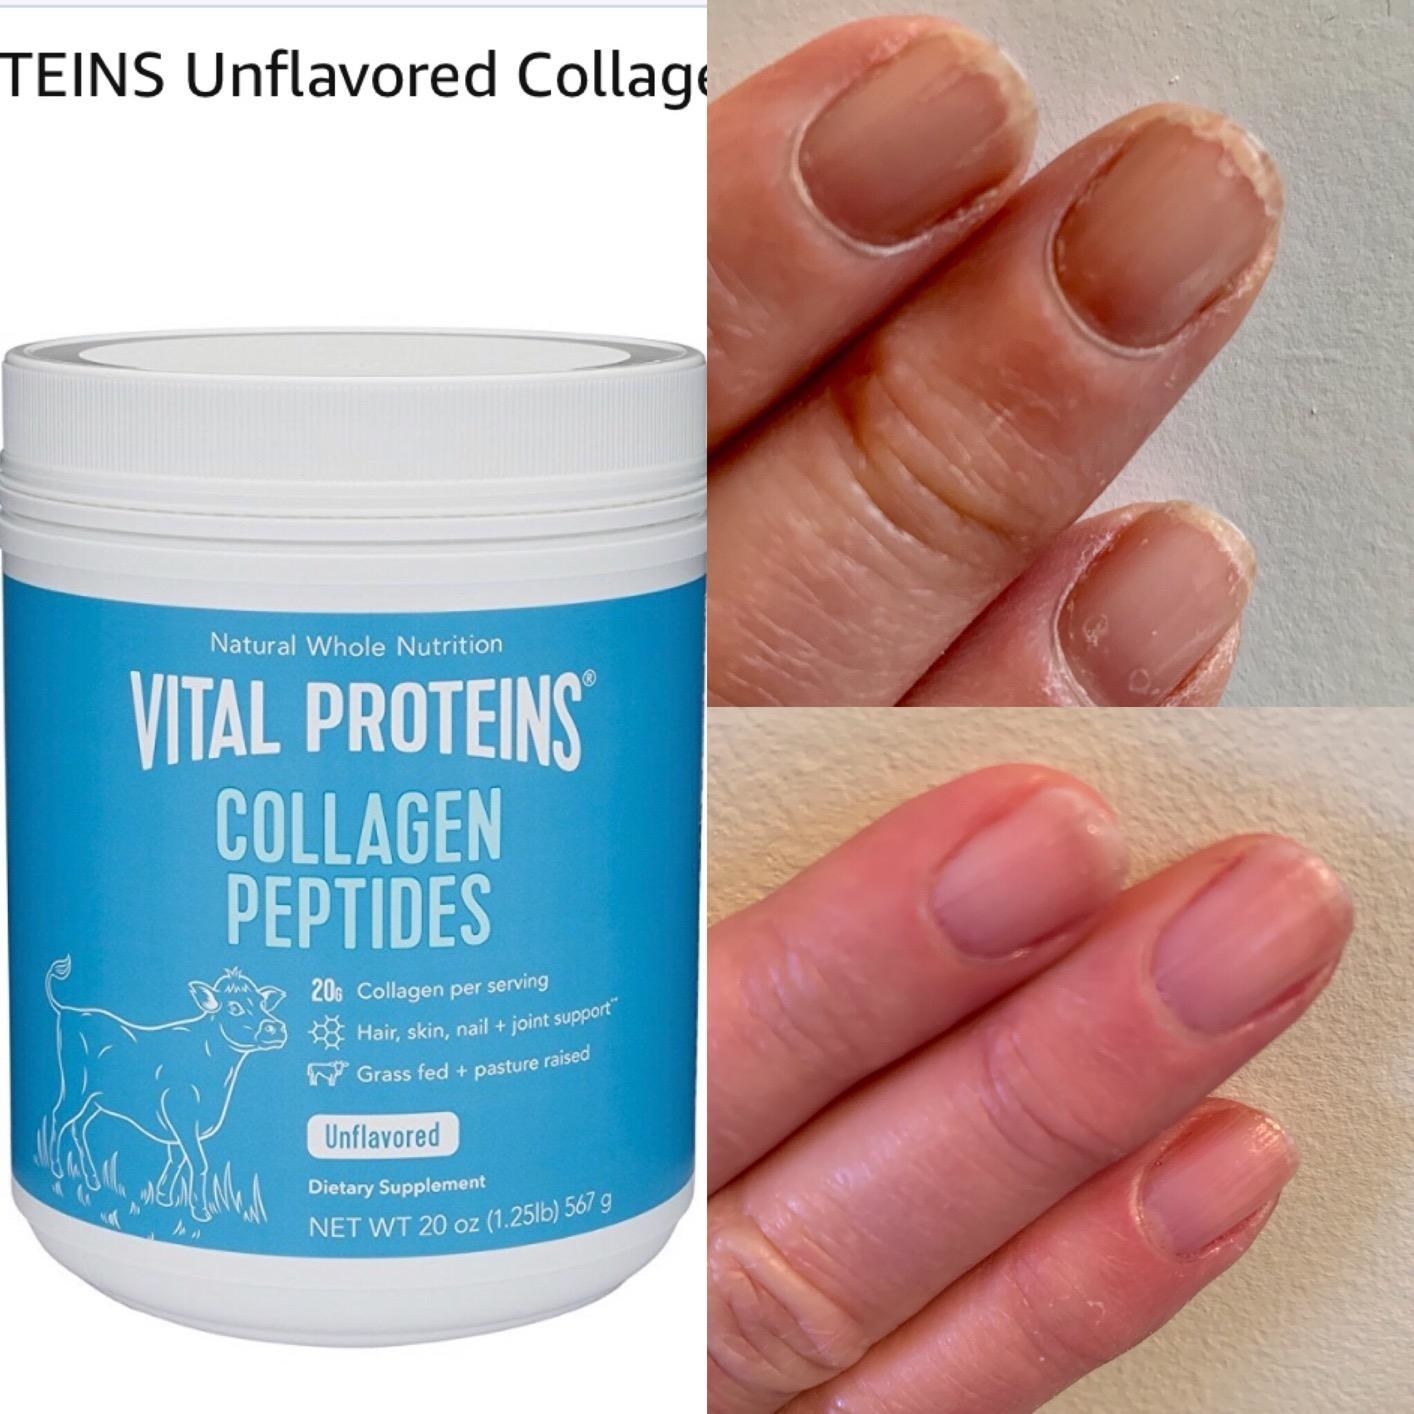 胶原蛋白肽的审阅者图像和一张破裂的指甲的图片和健康指甲的照片